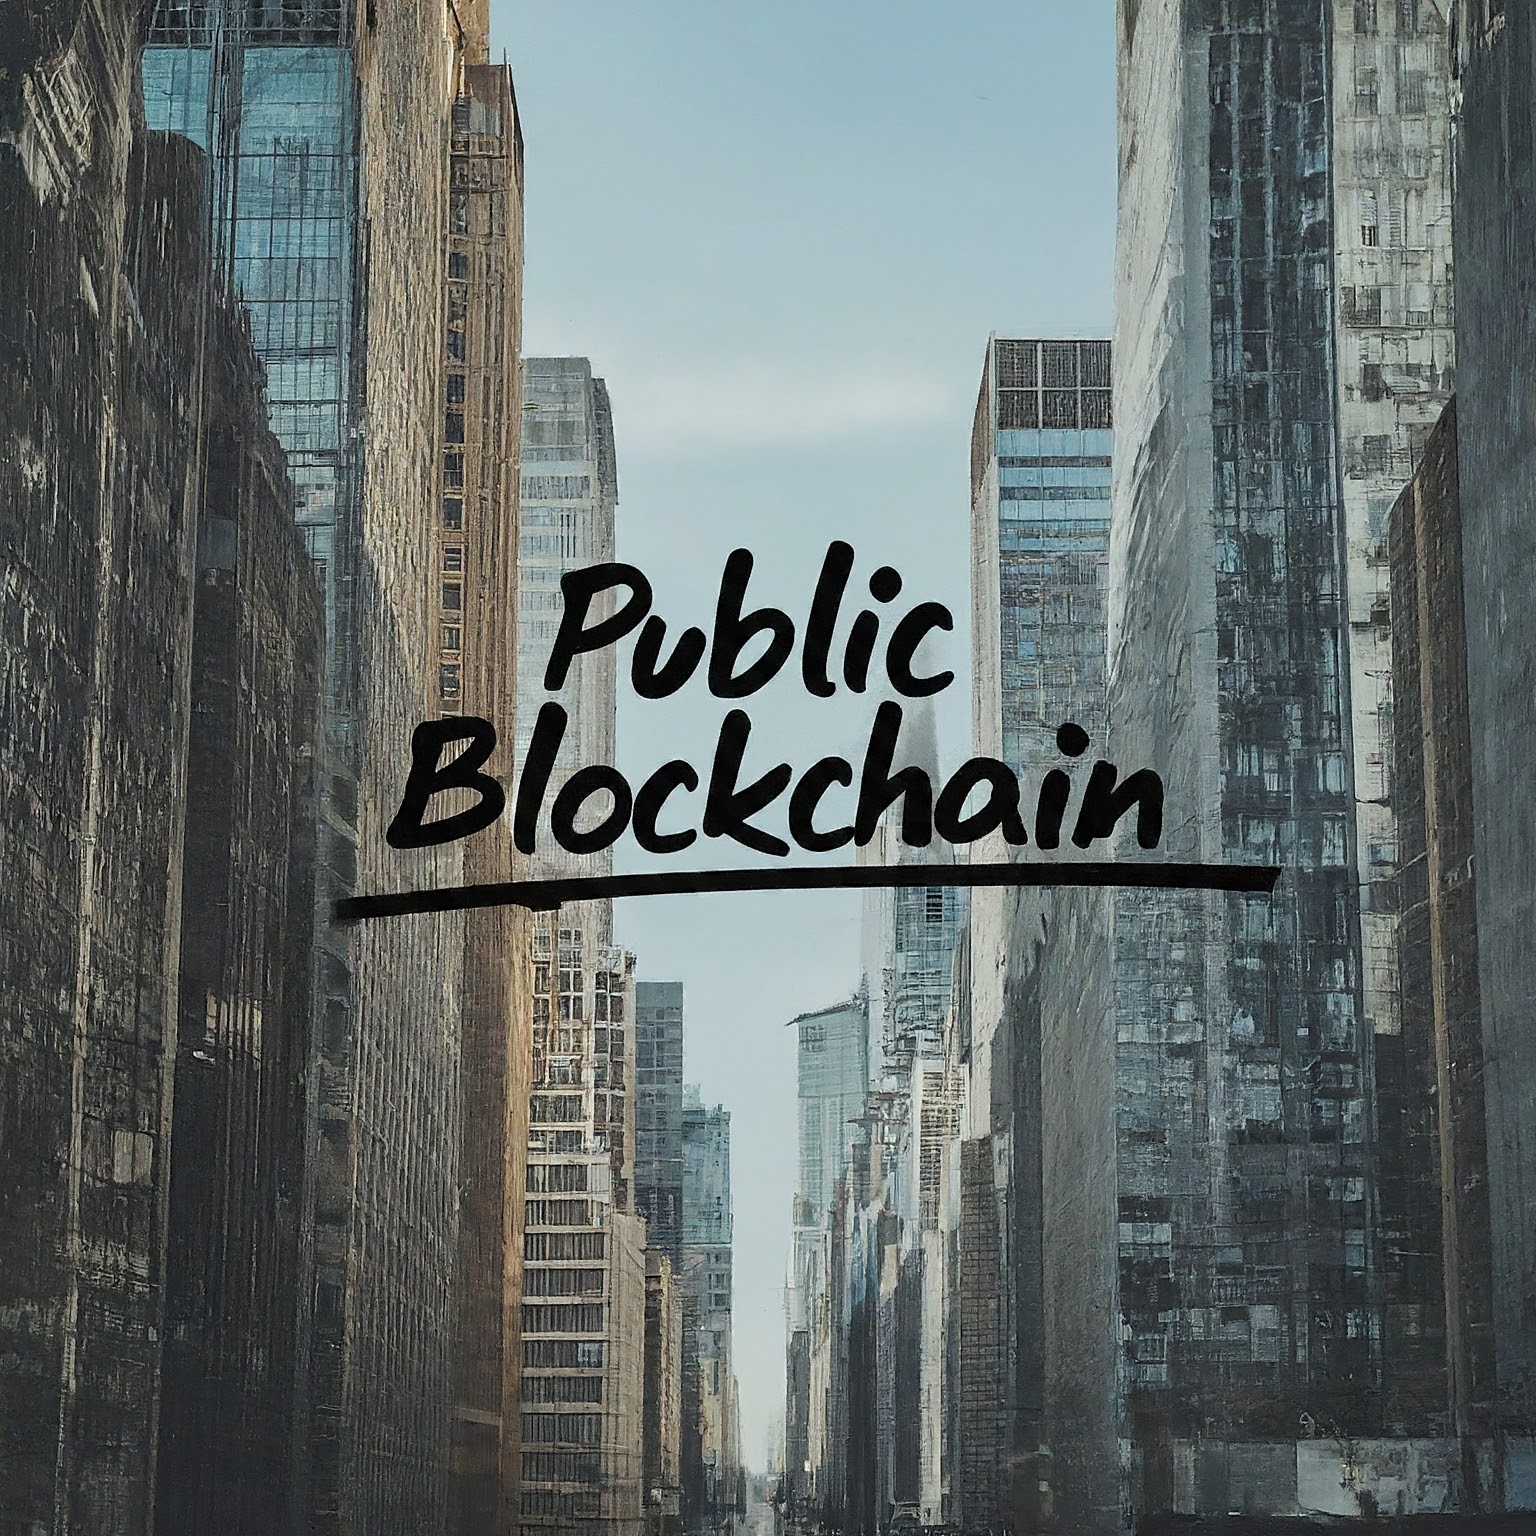 What is a Public Blockchain?